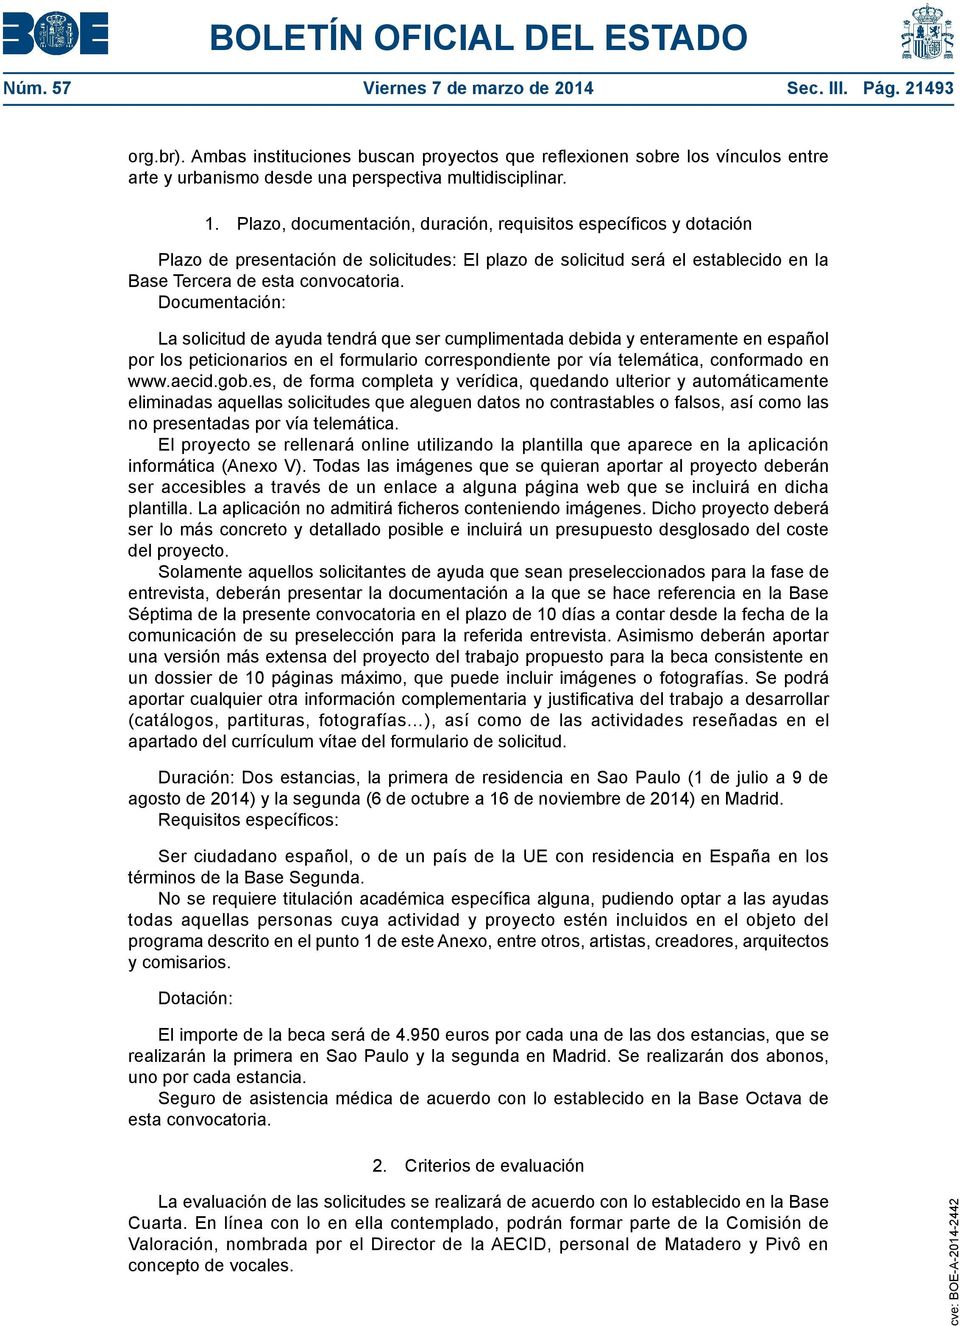 Documentación: La solicitud de ayuda tendrá que ser cumplimentada debida y enteramente en español por los peticionarios en el formulario correspondiente por vía telemática, conformado en www.aecid.